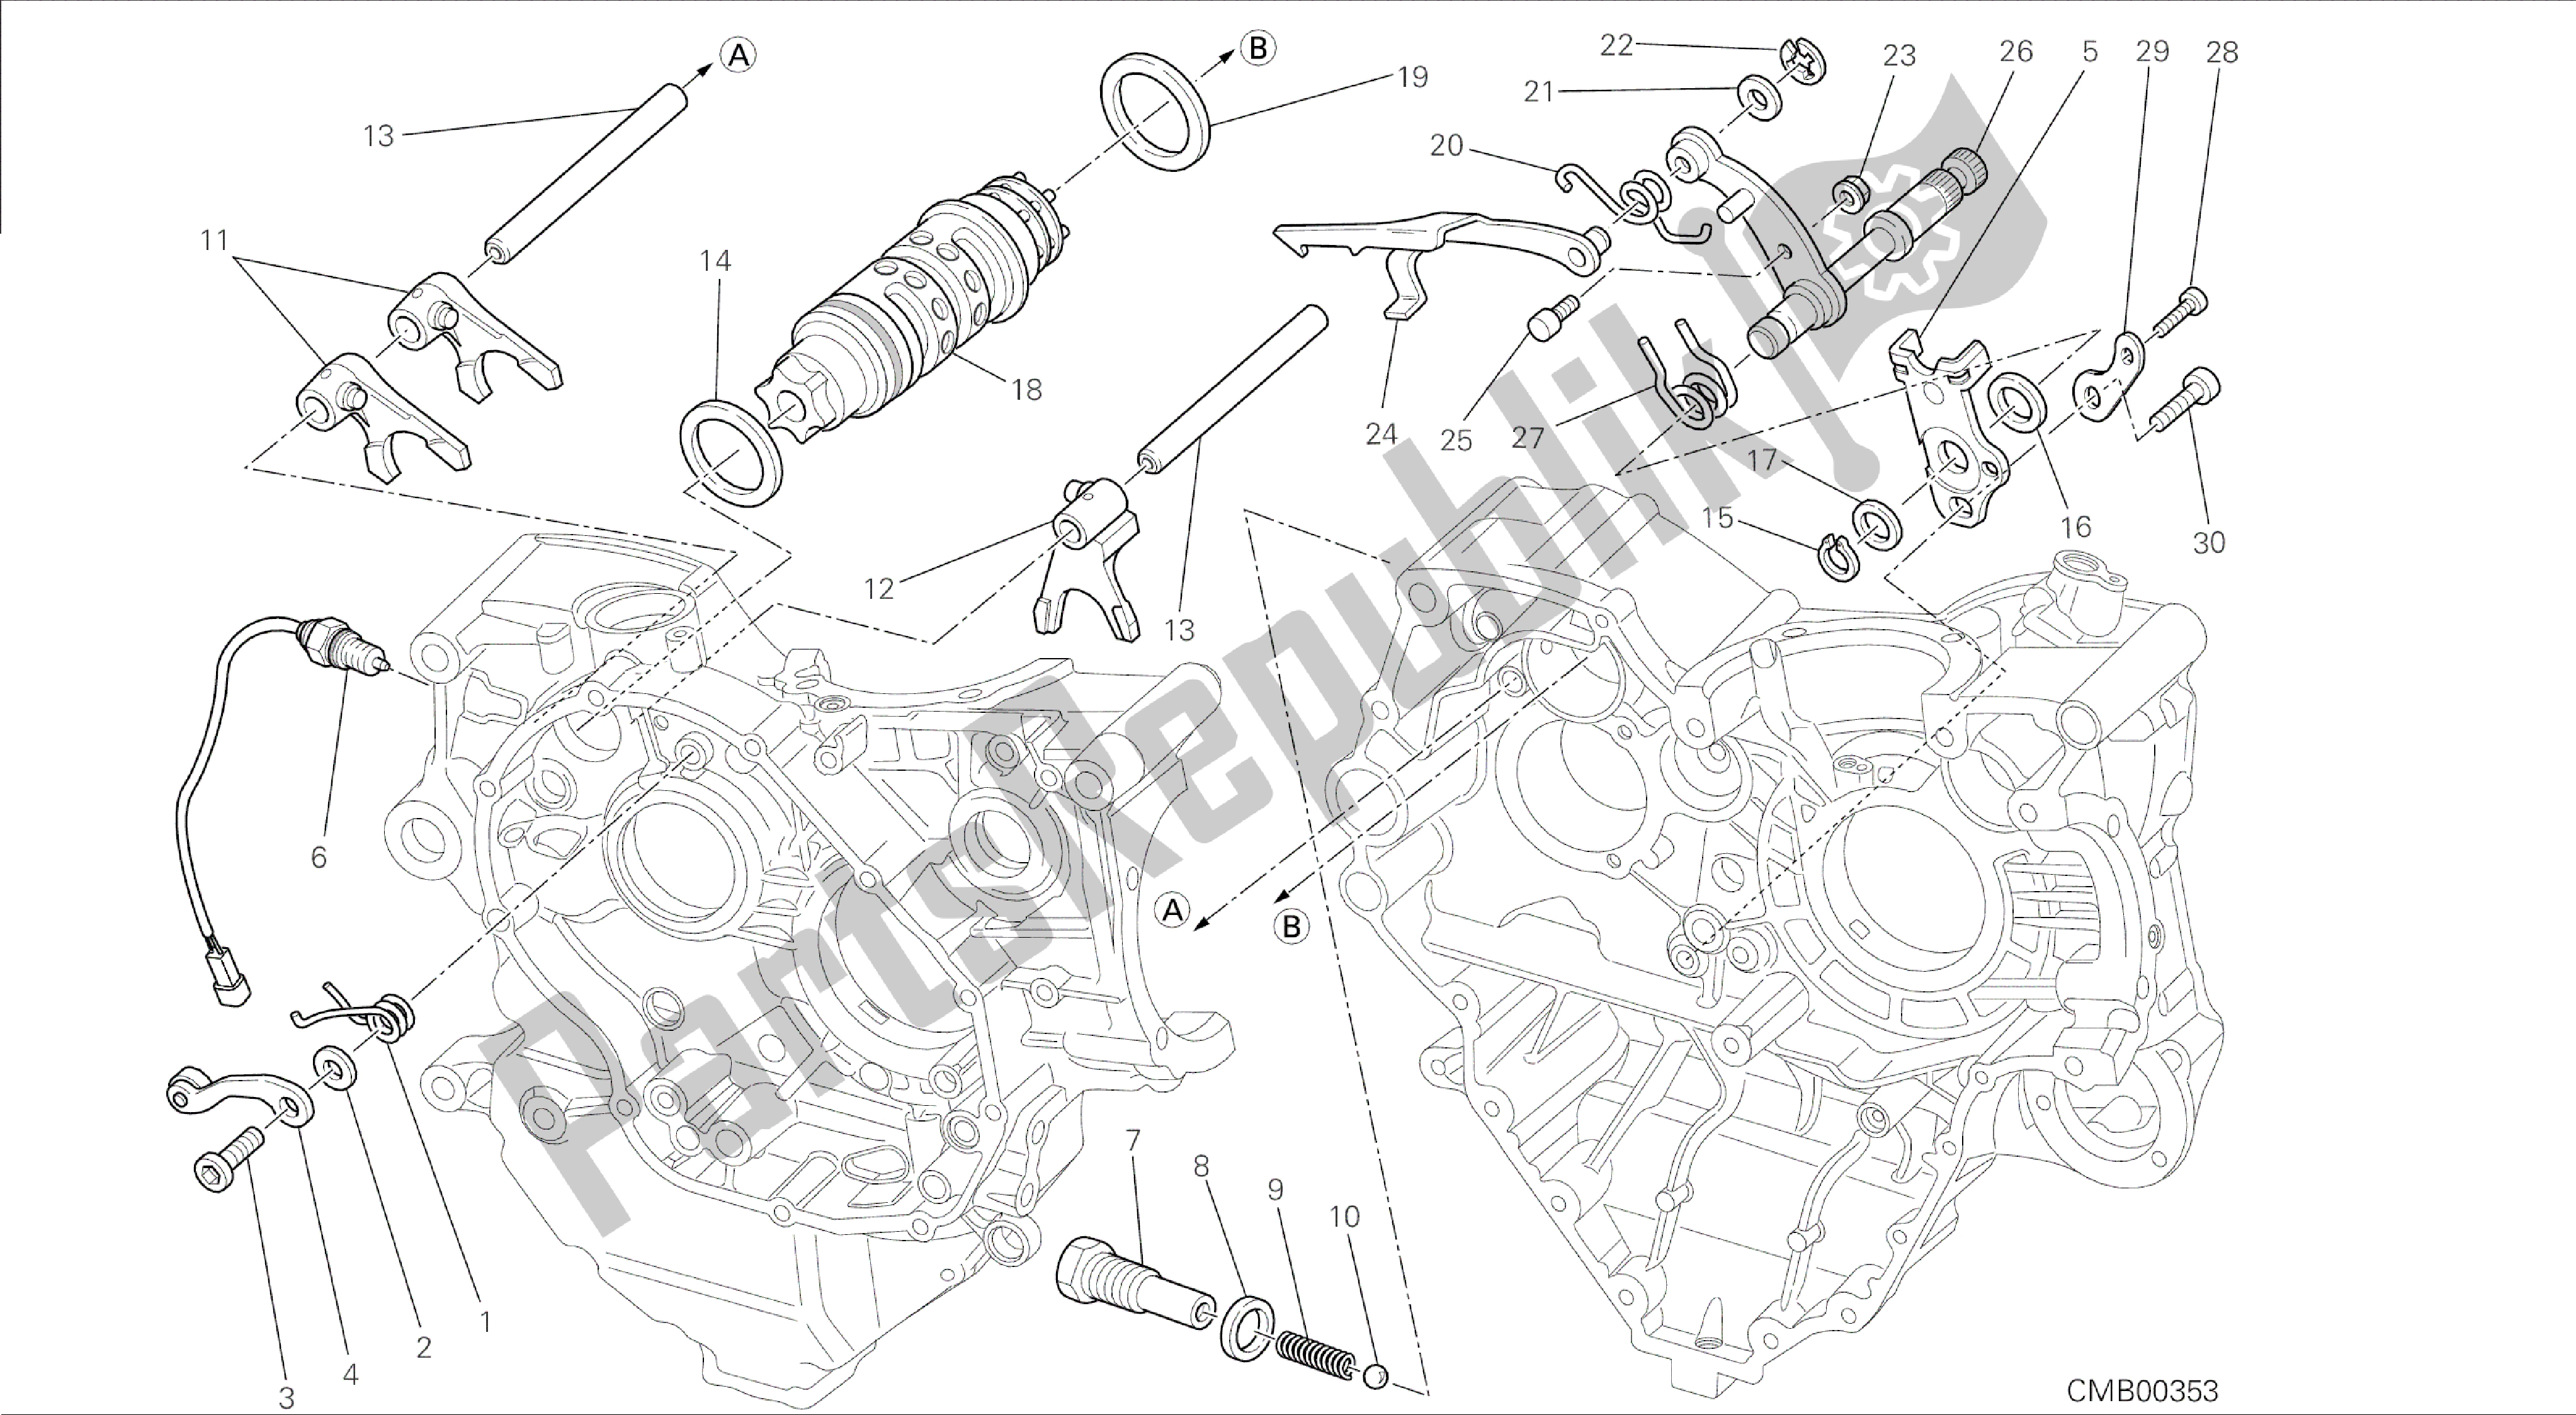 Todas las partes para Dibujo 002 - Motor De Grupo De Control De Cambio De Marcha [mod: Dvl] de Ducati Diavel 1200 2015